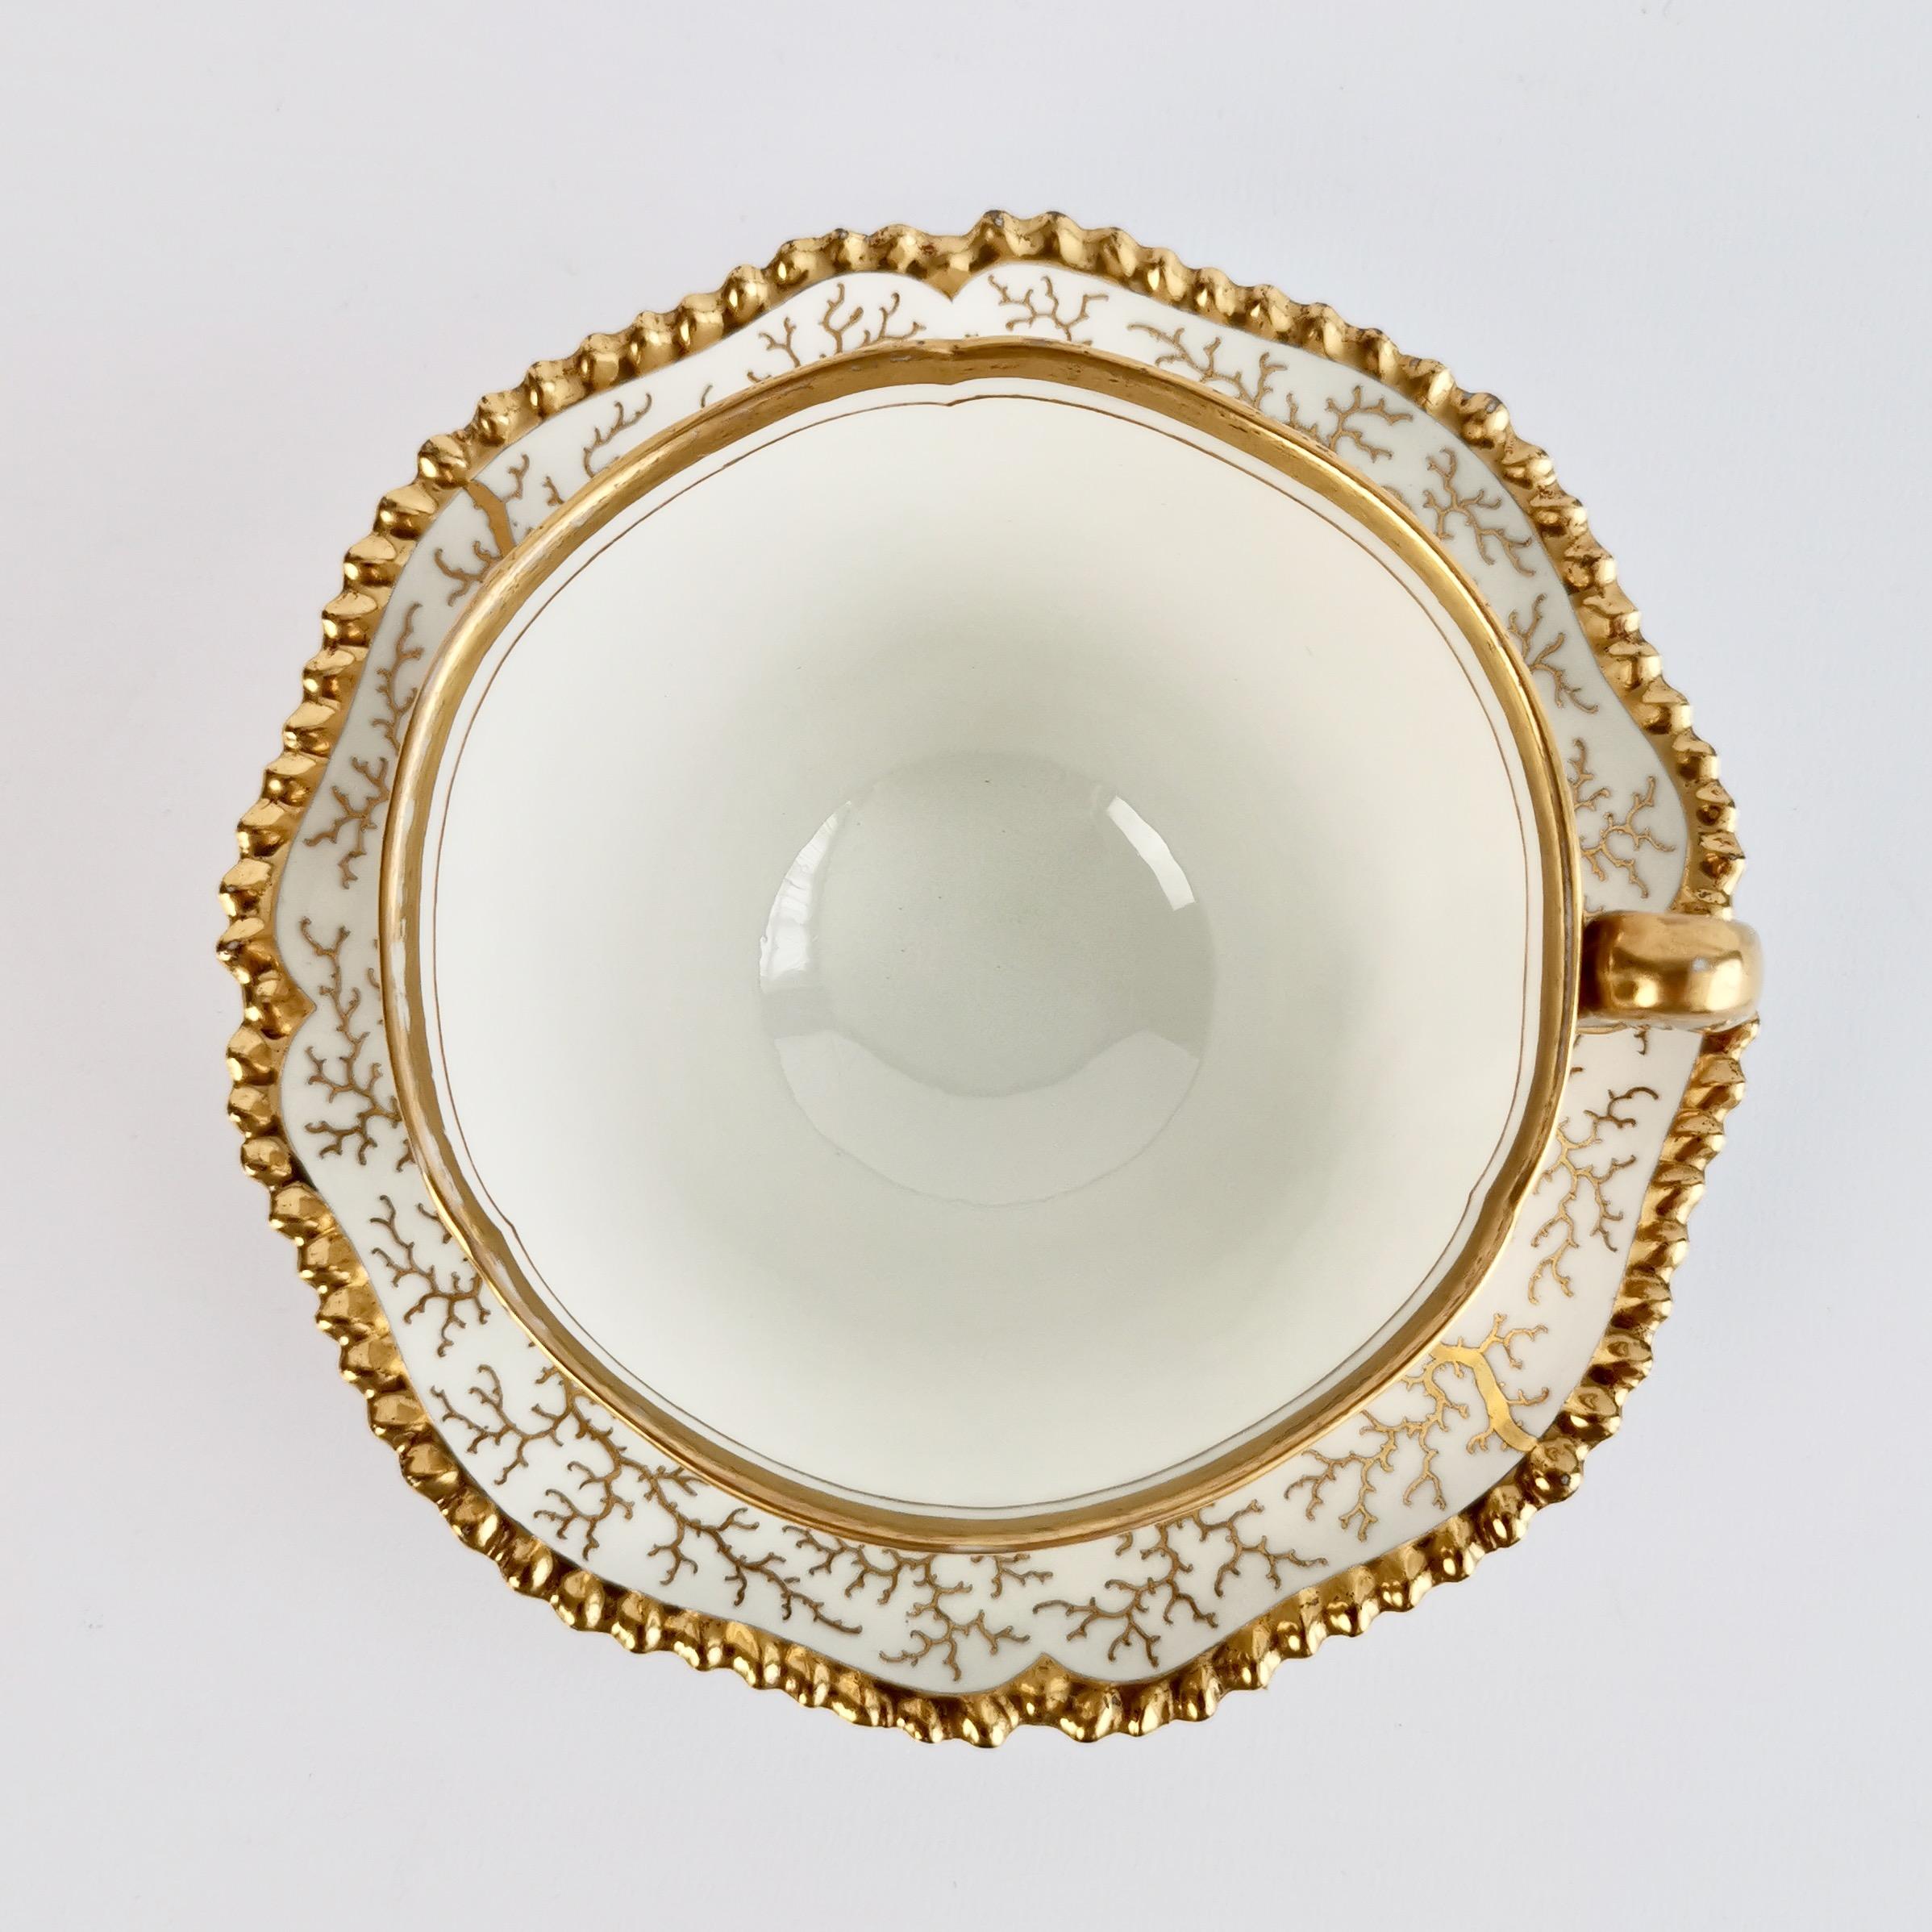 Hand-Painted Flight Barr & Barr Worcester Porcelain Teacup, Gilt Seaweed, Regency, 1816-1820